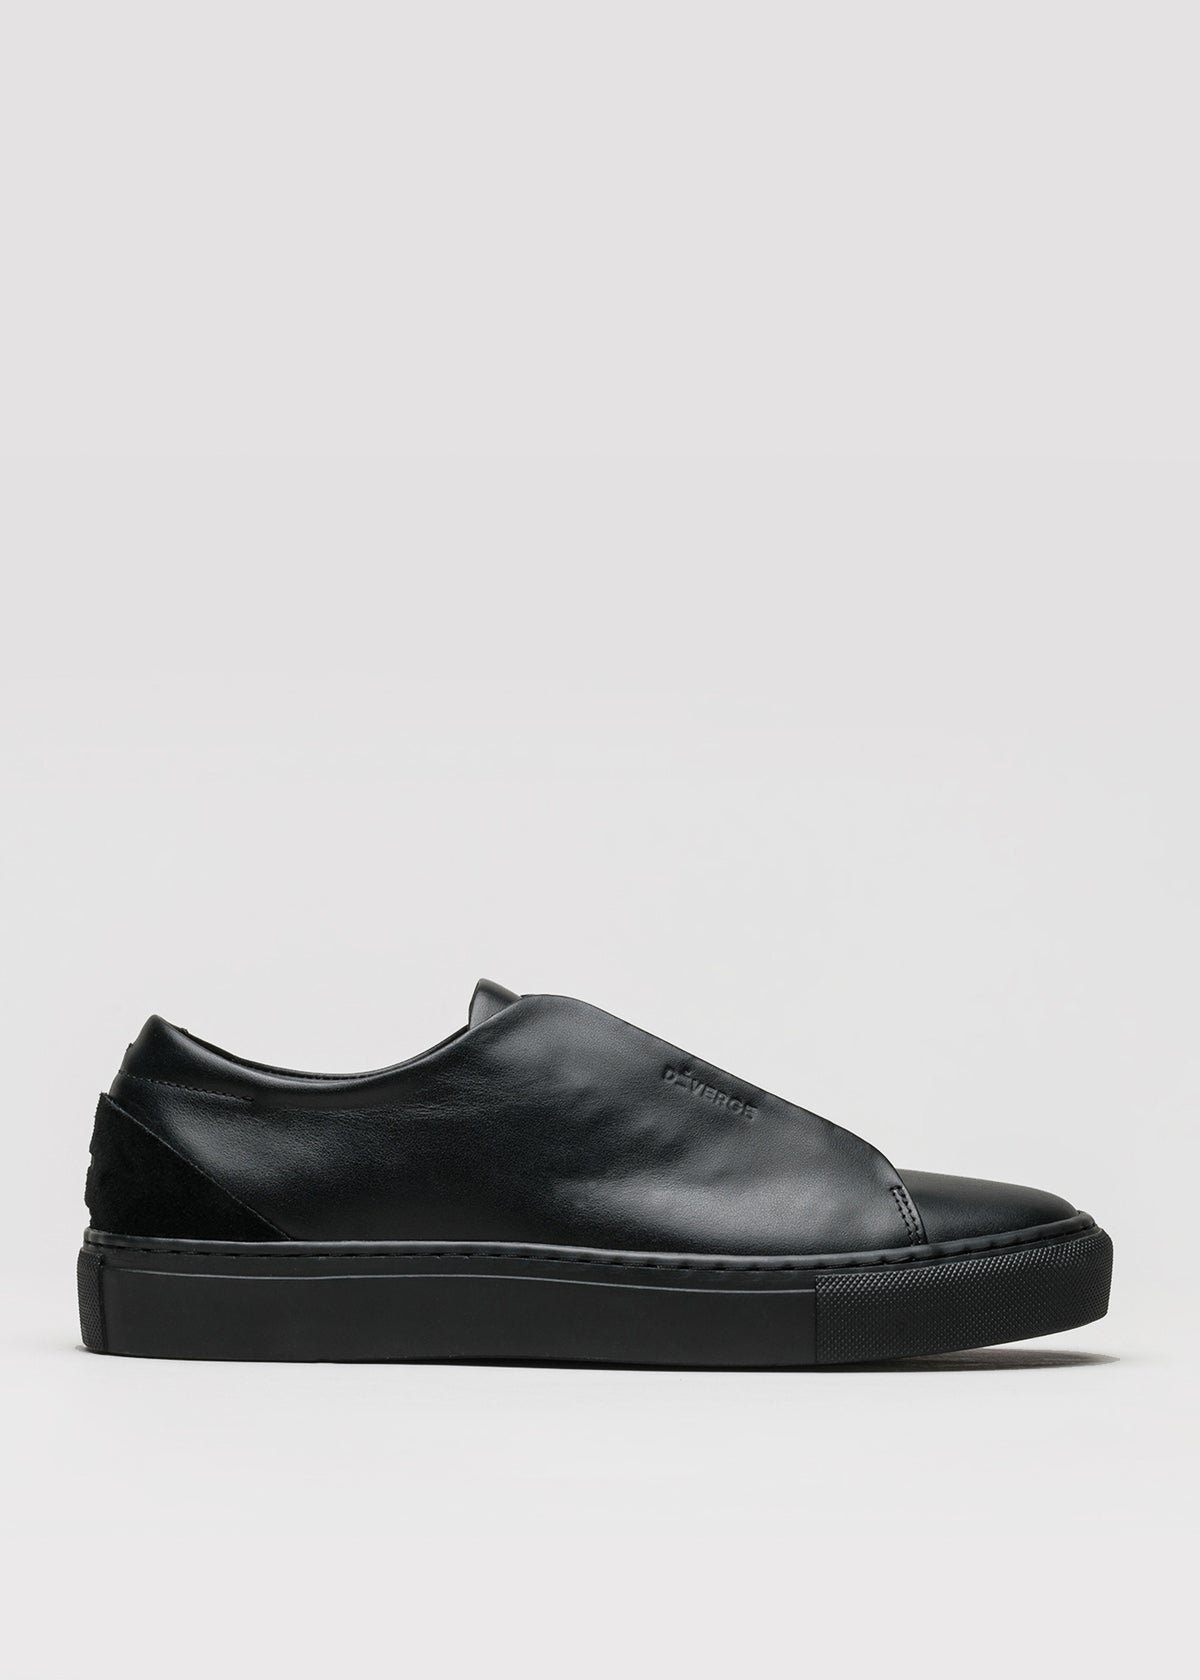 schwarzes Premium-Leder niedrig sneakers in cleanem Design Seitenansicht